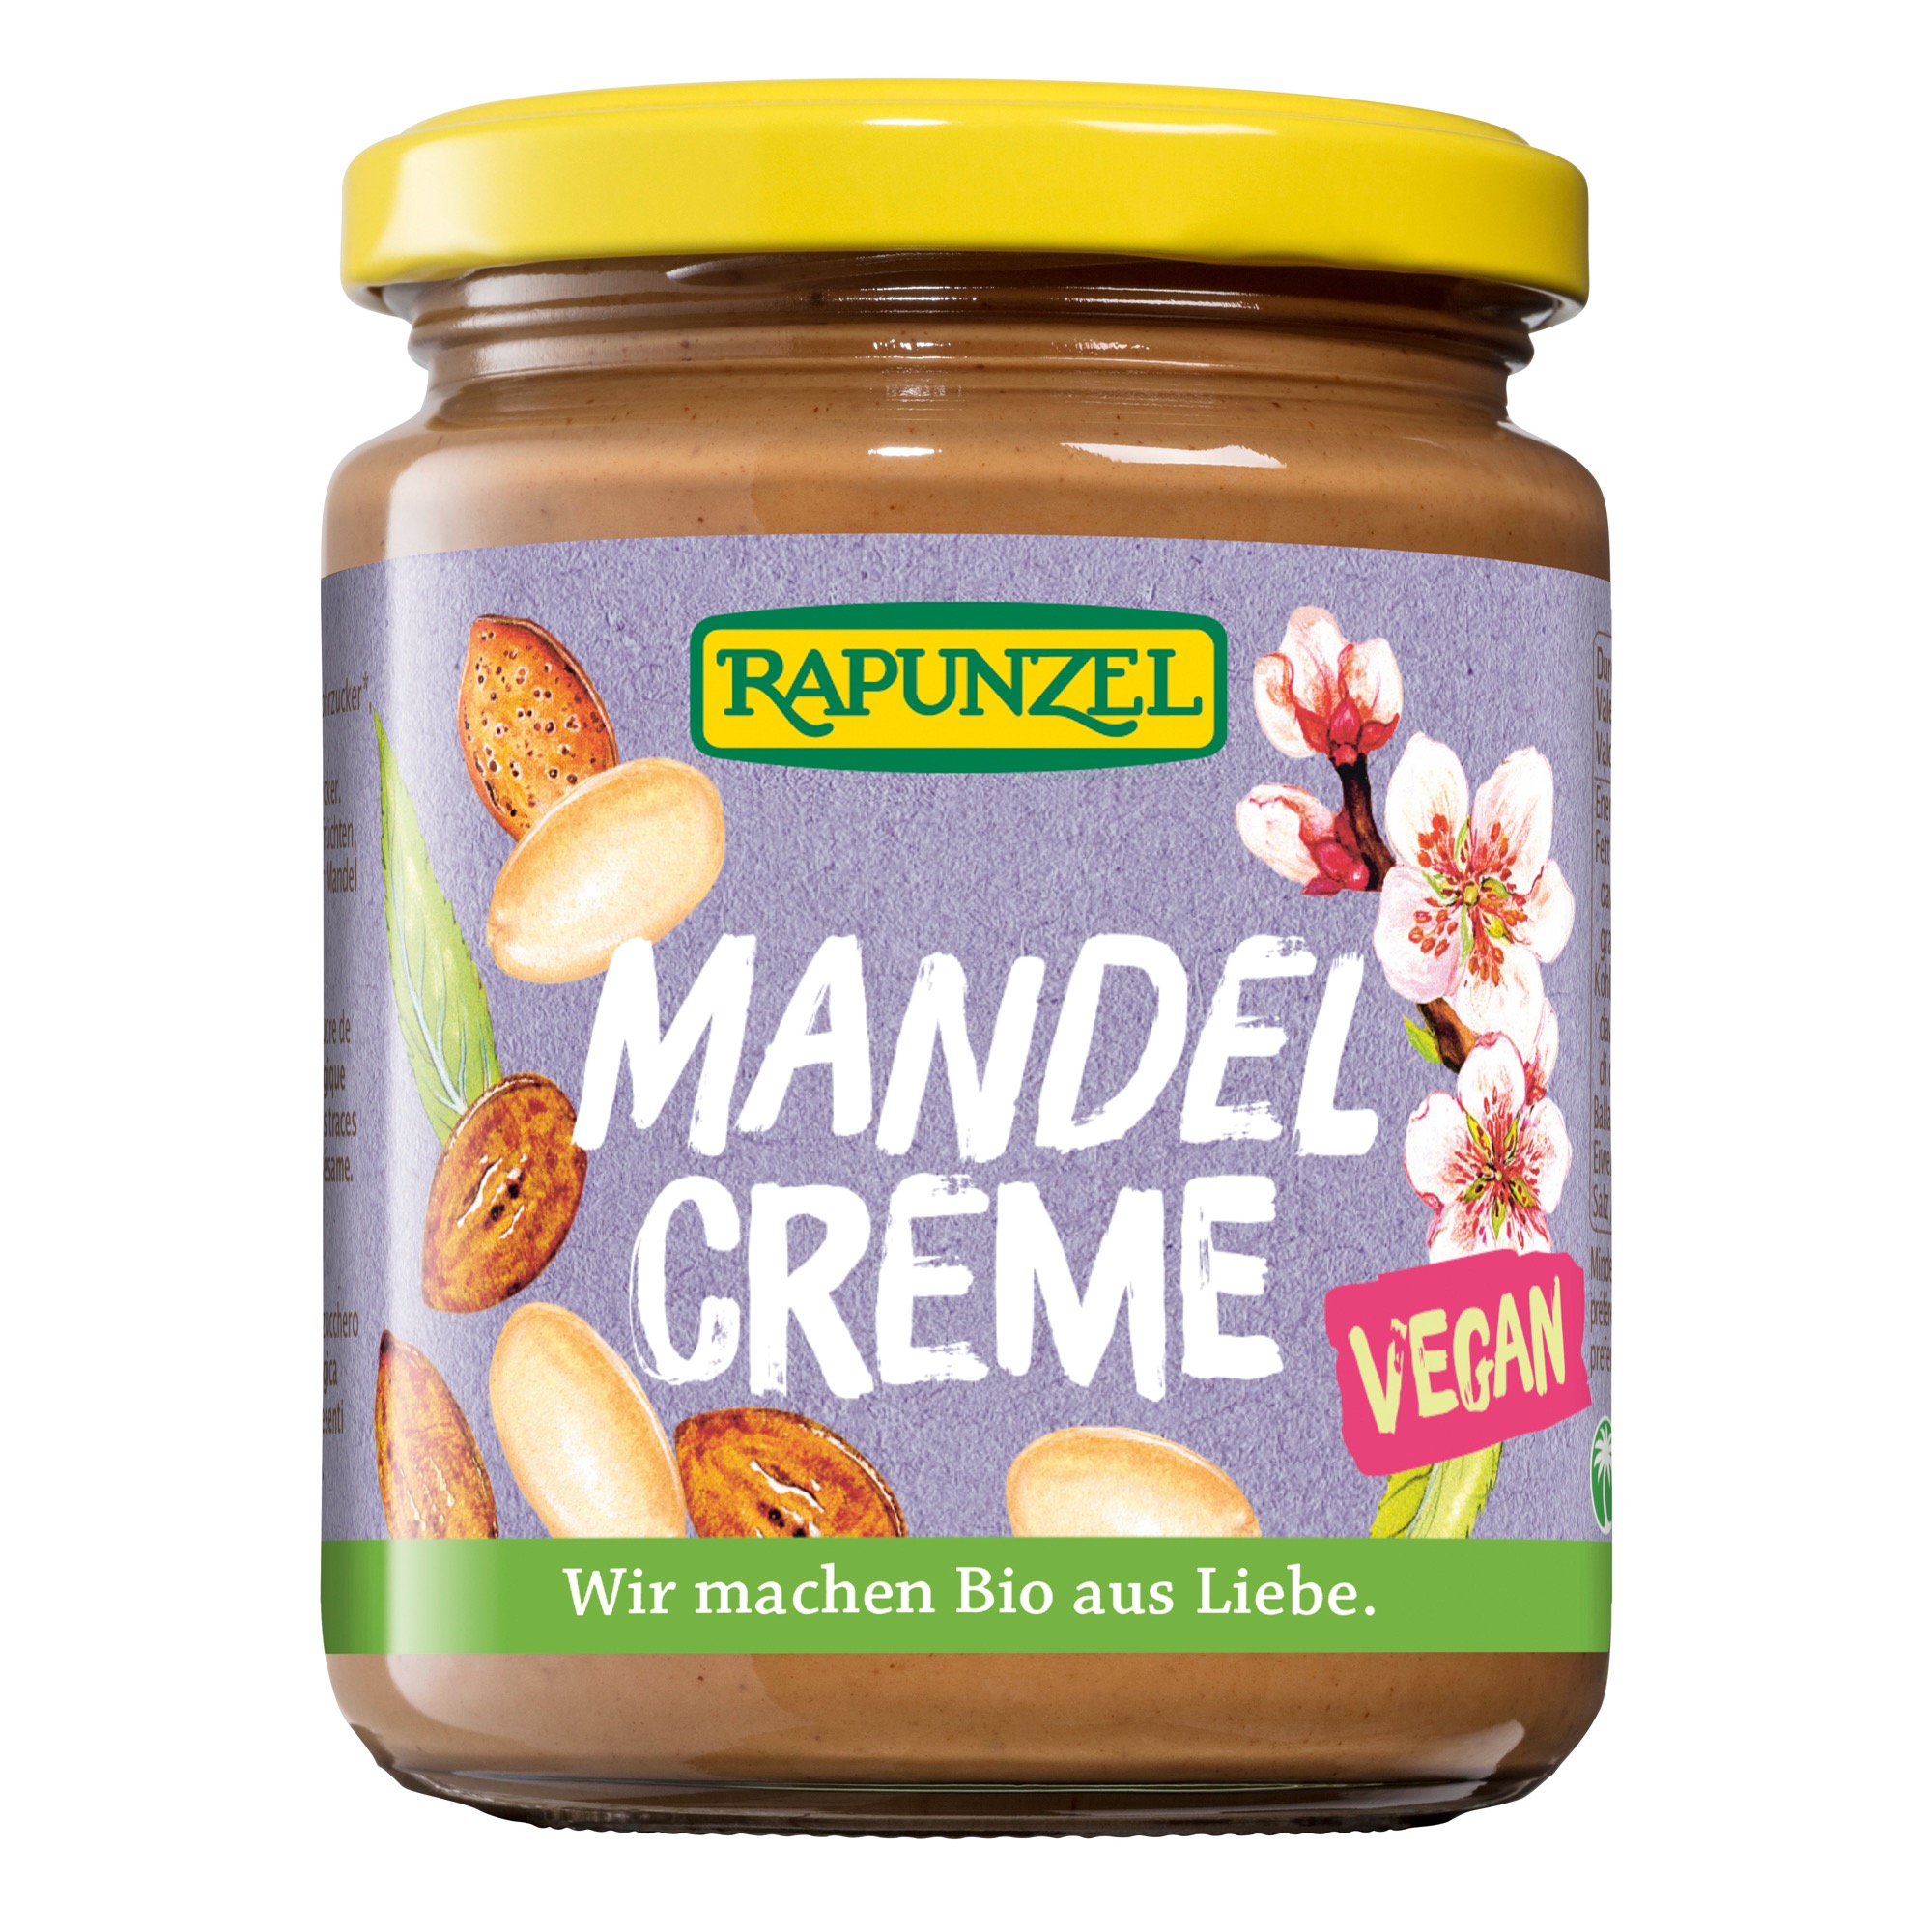 Mandel-Creme von Rapunzel.